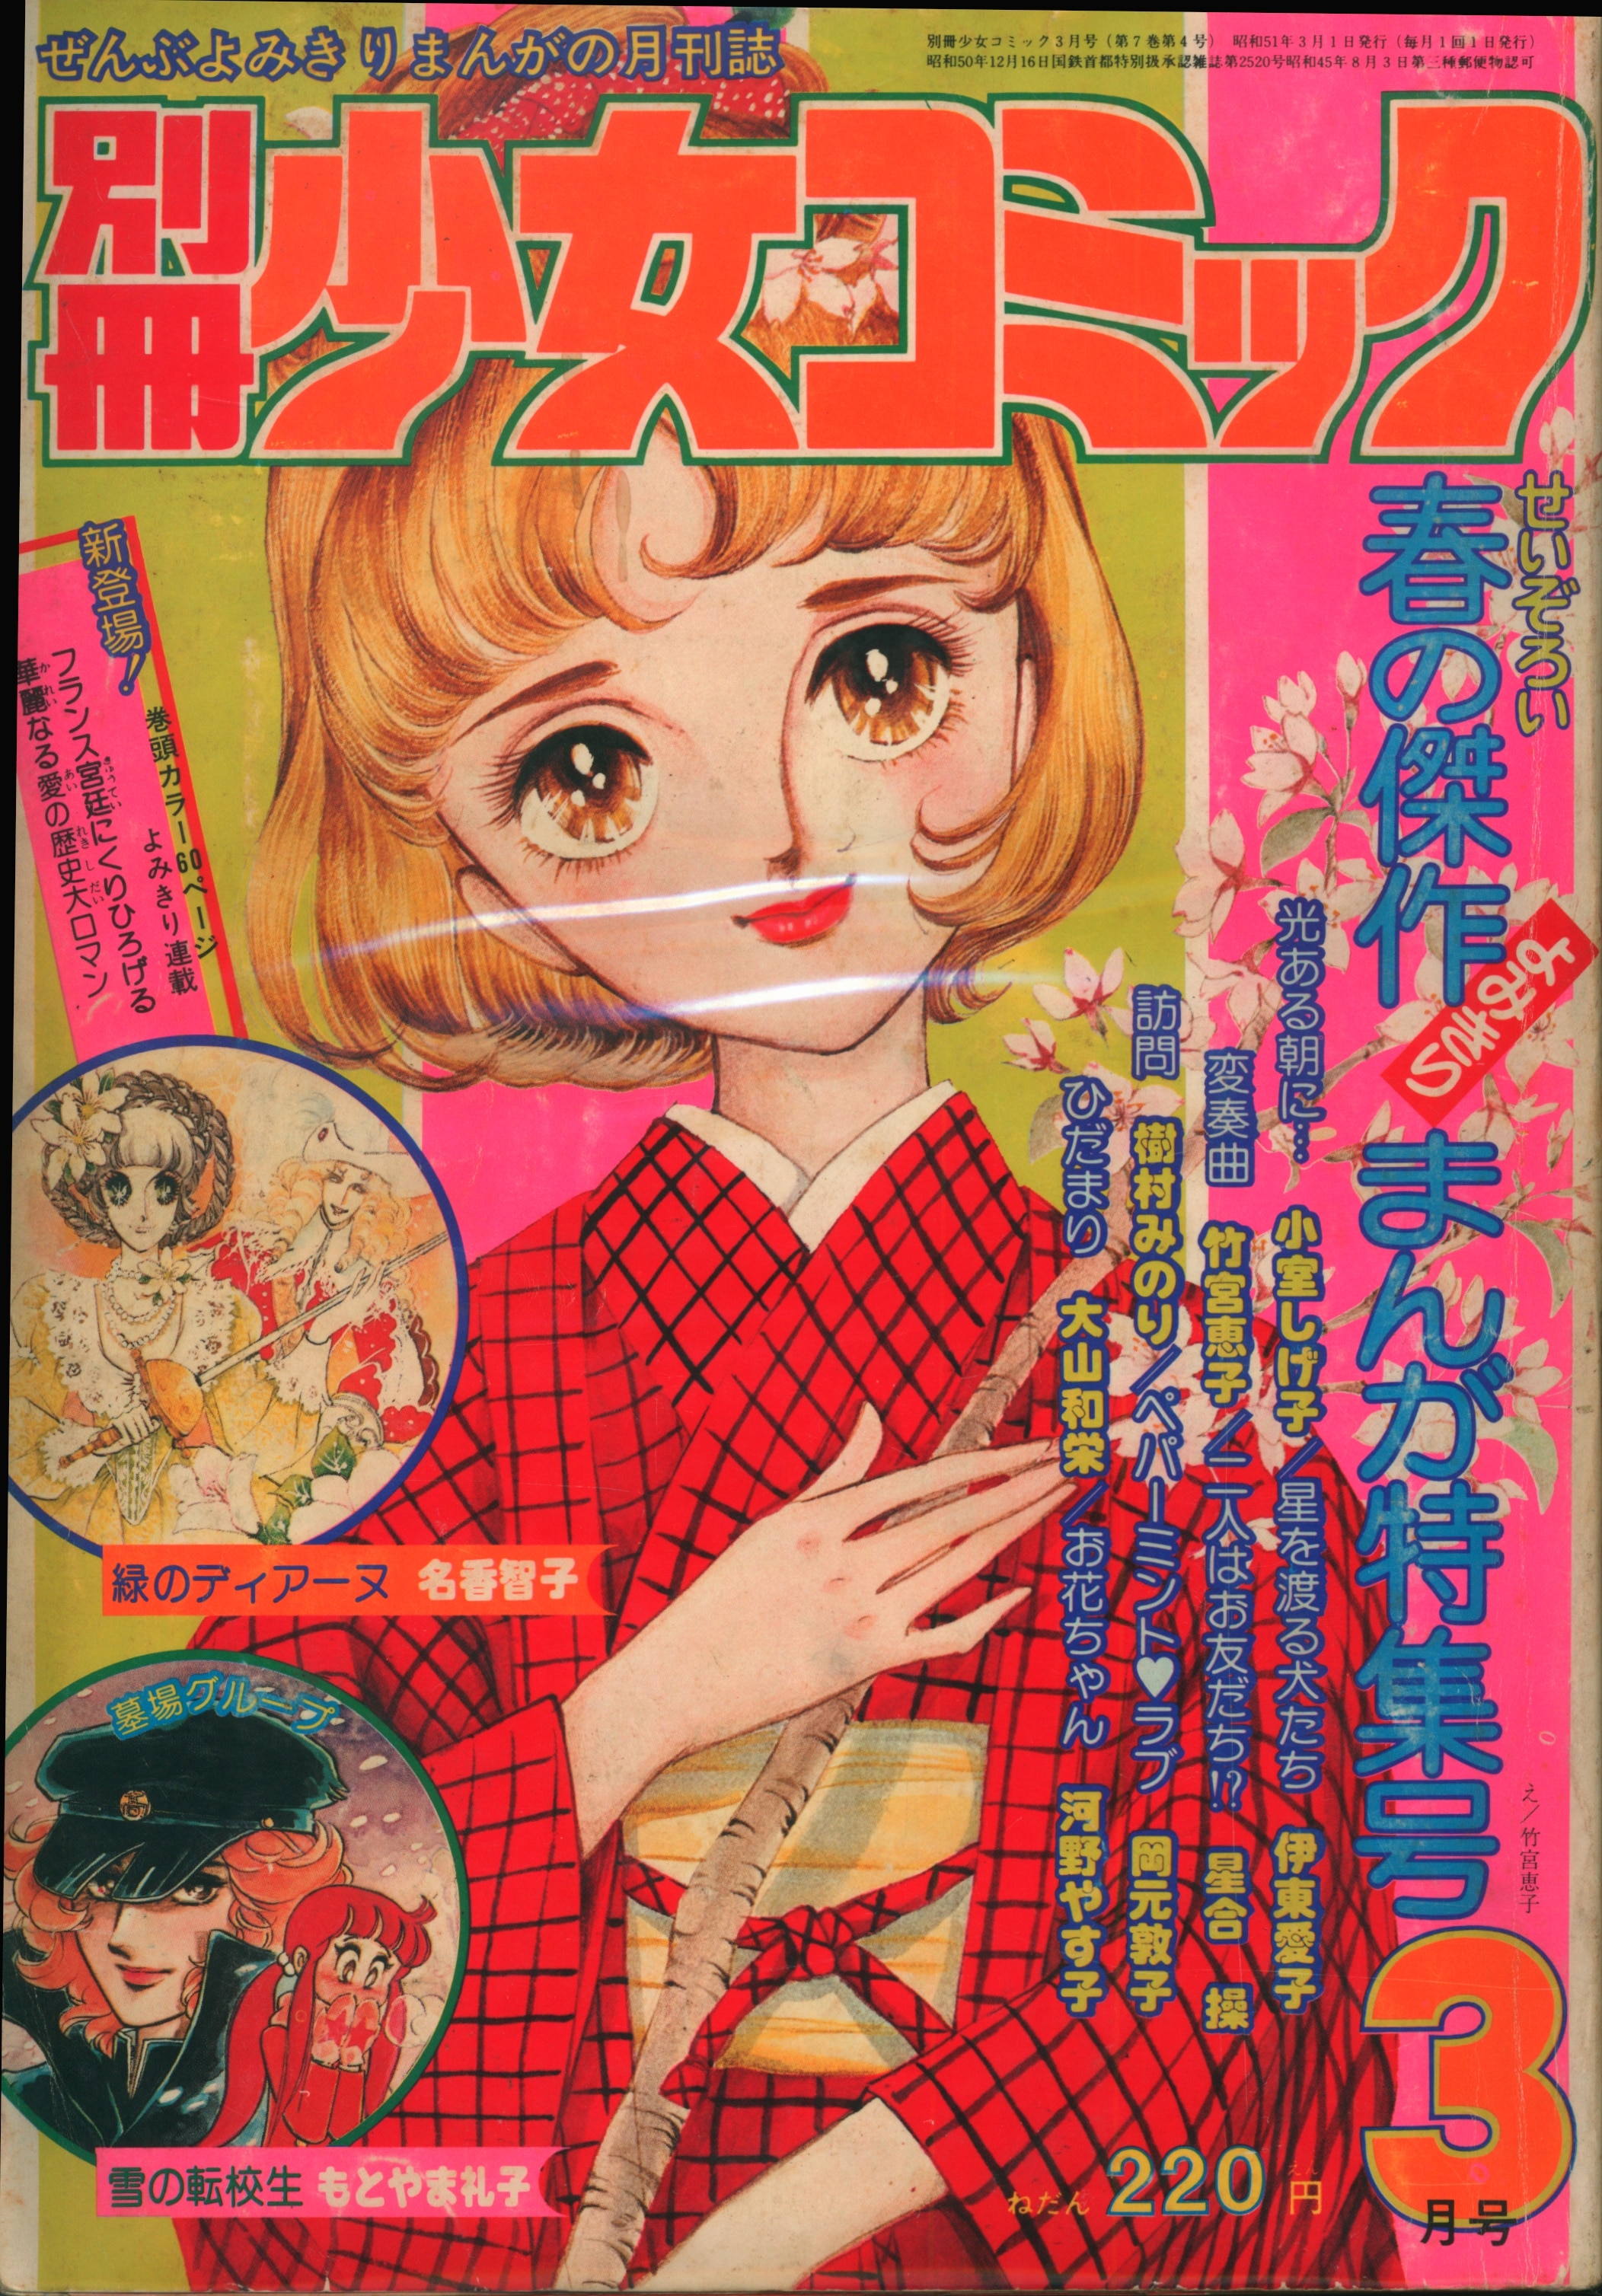 まんだらけ　小学館　7603　別冊少女コミック1976年(昭和51年)3月号　1976年(昭和51年)の漫画雑誌　Mandarake